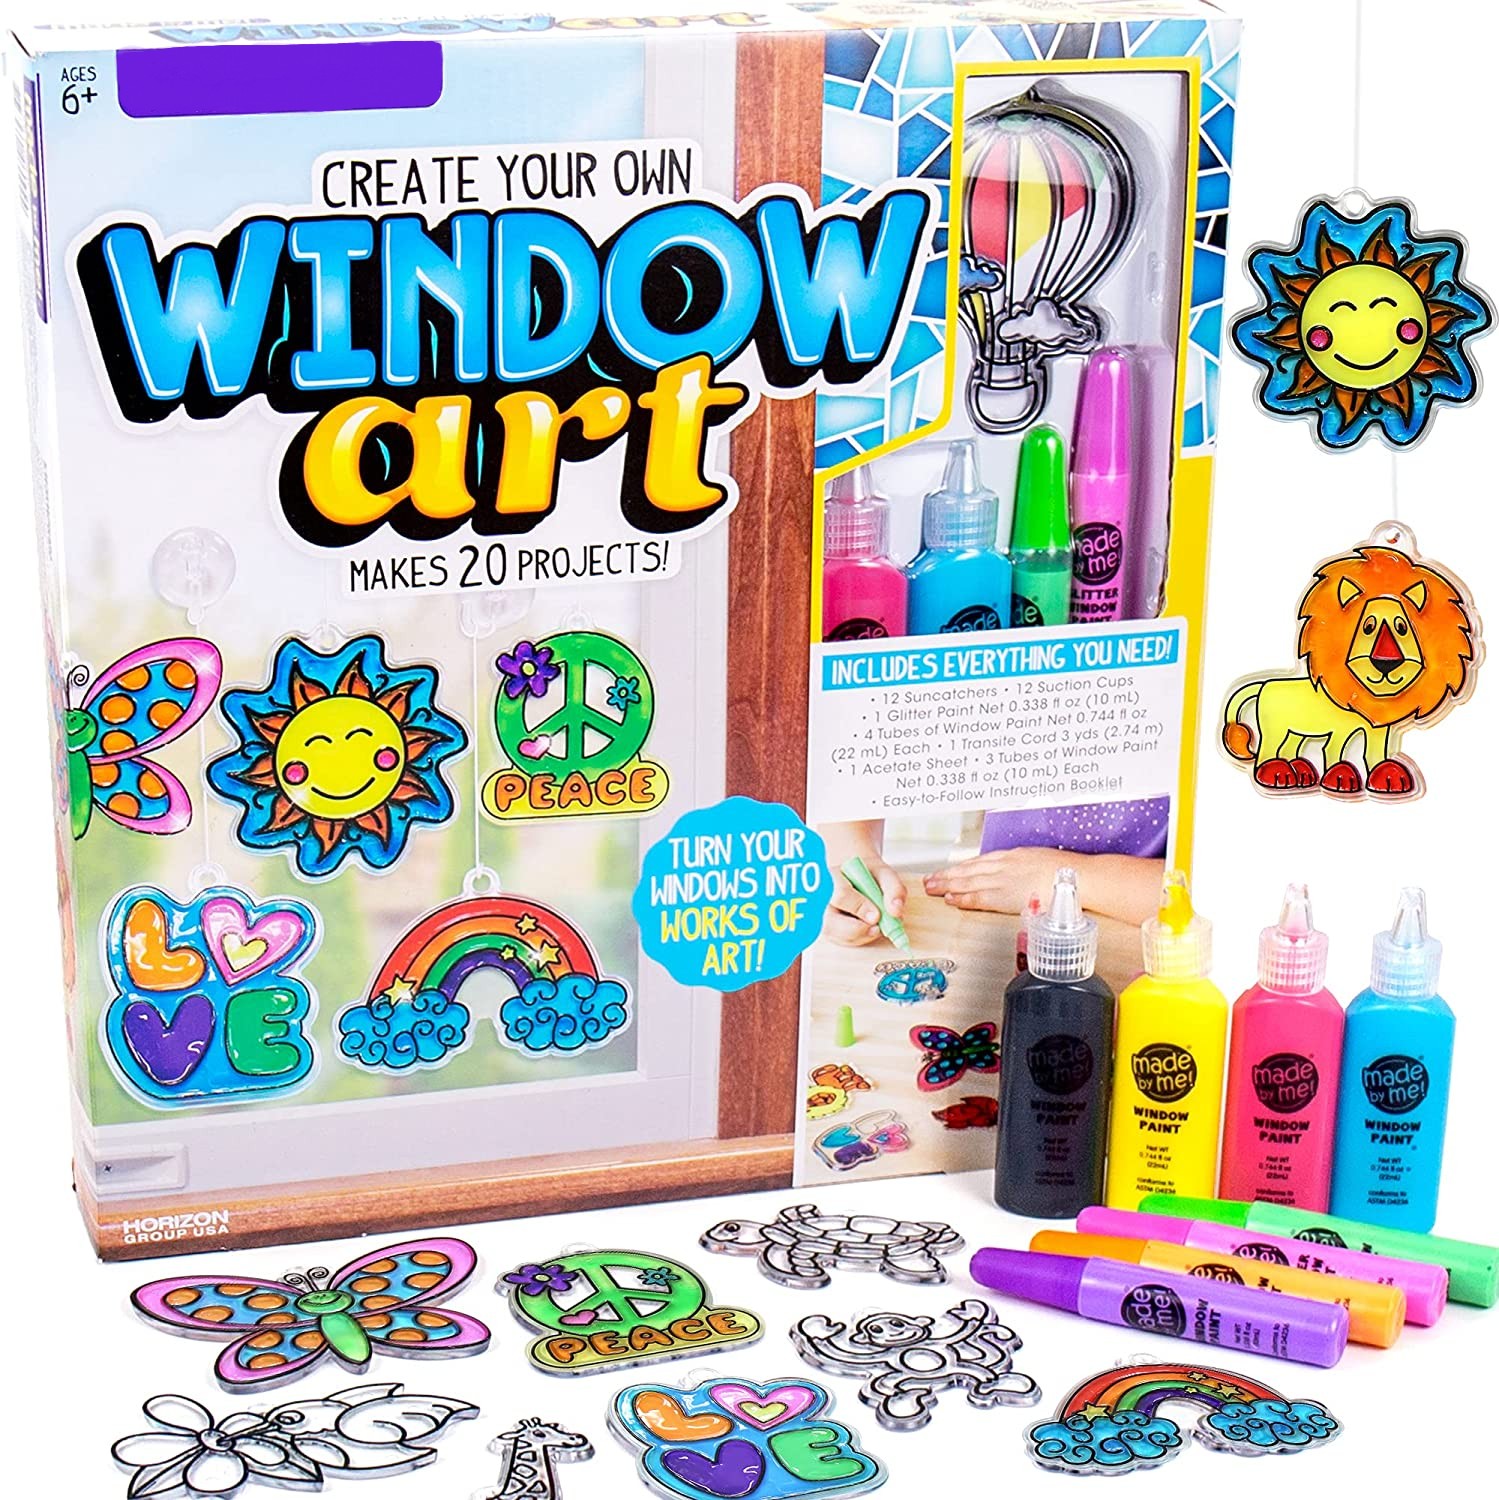 Արվեստների և արհեստների հավաքածուներ երեխաների համար Պատուհանների արվեստ DIY Suncatchers ծննդյան խաղալիք